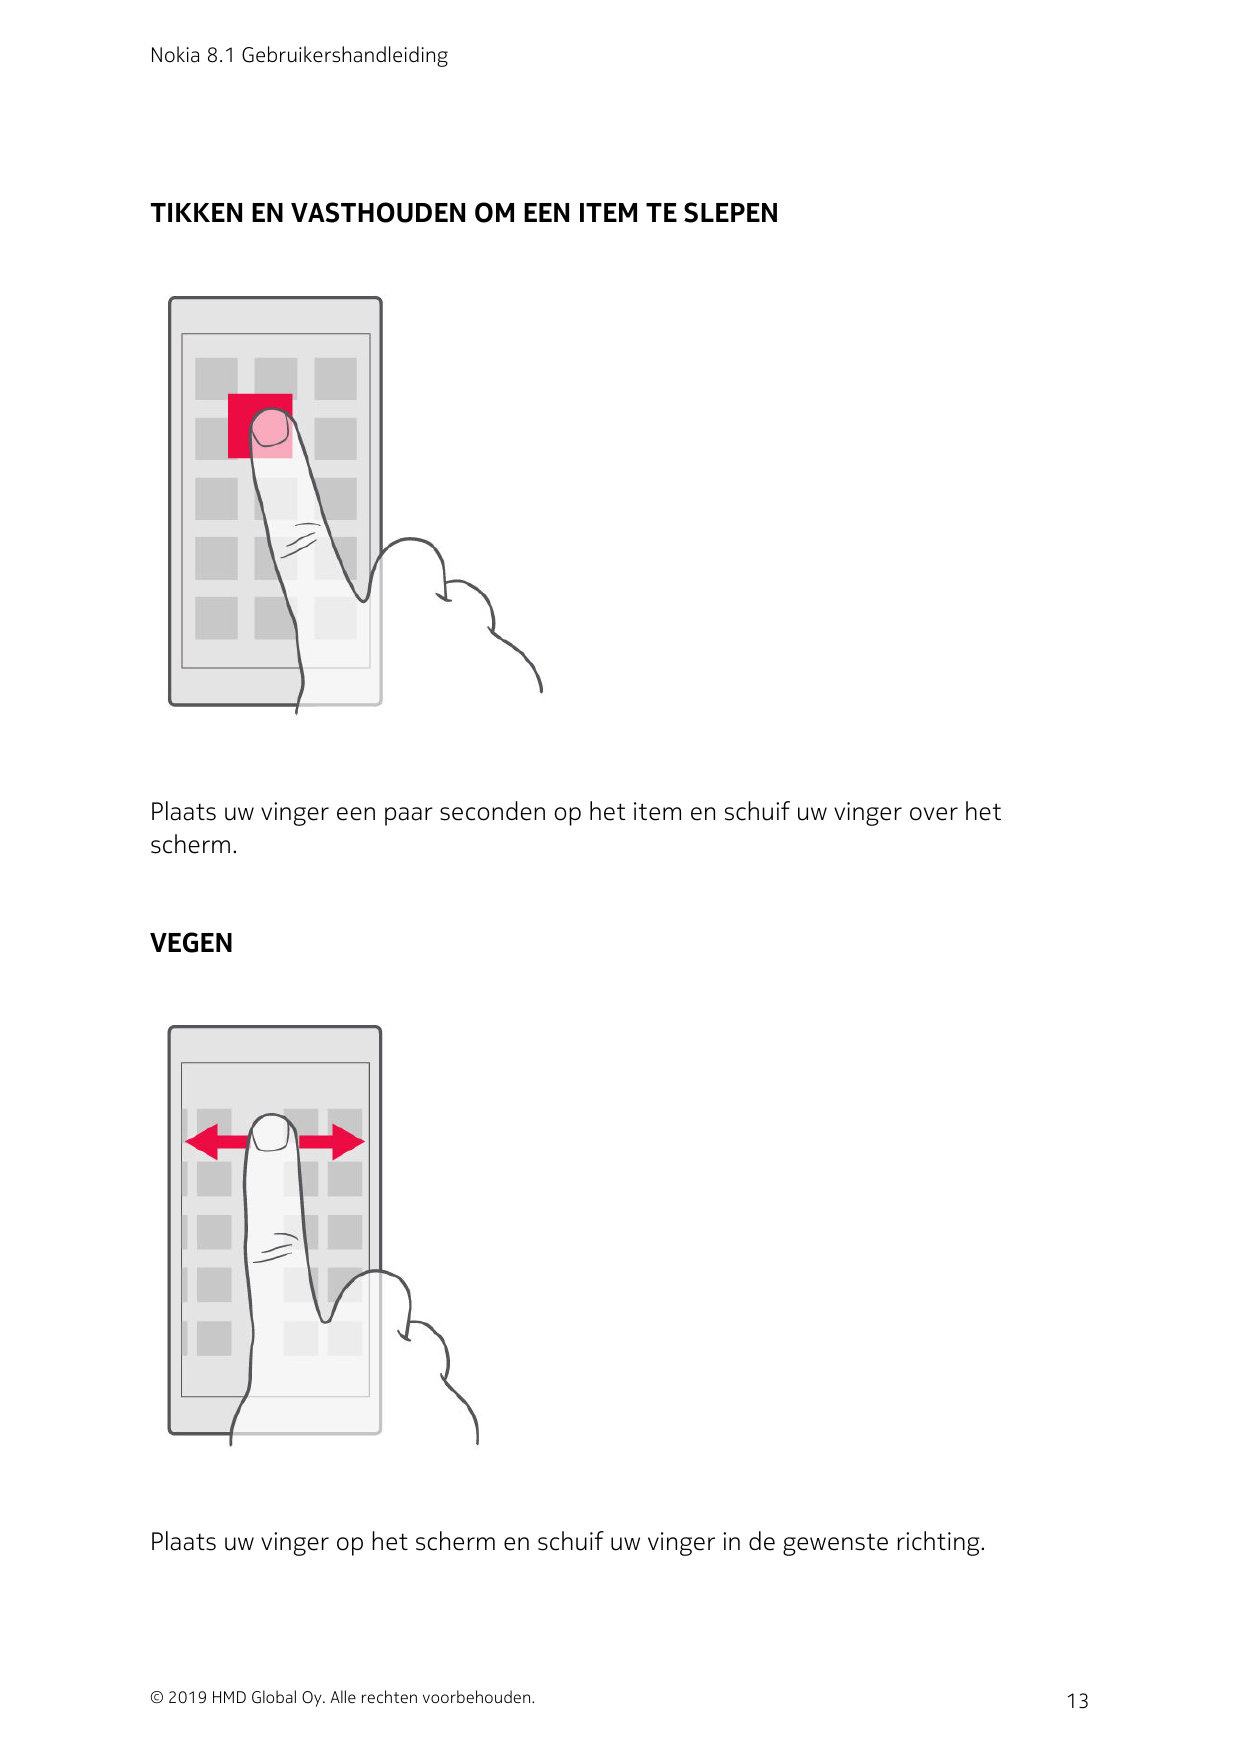 Nokia 8.1 GebruikershandleidingTIKKEN EN VASTHOUDEN OM EEN ITEM TE SLEPENPlaats uw vinger een paar seconden op het item en schui